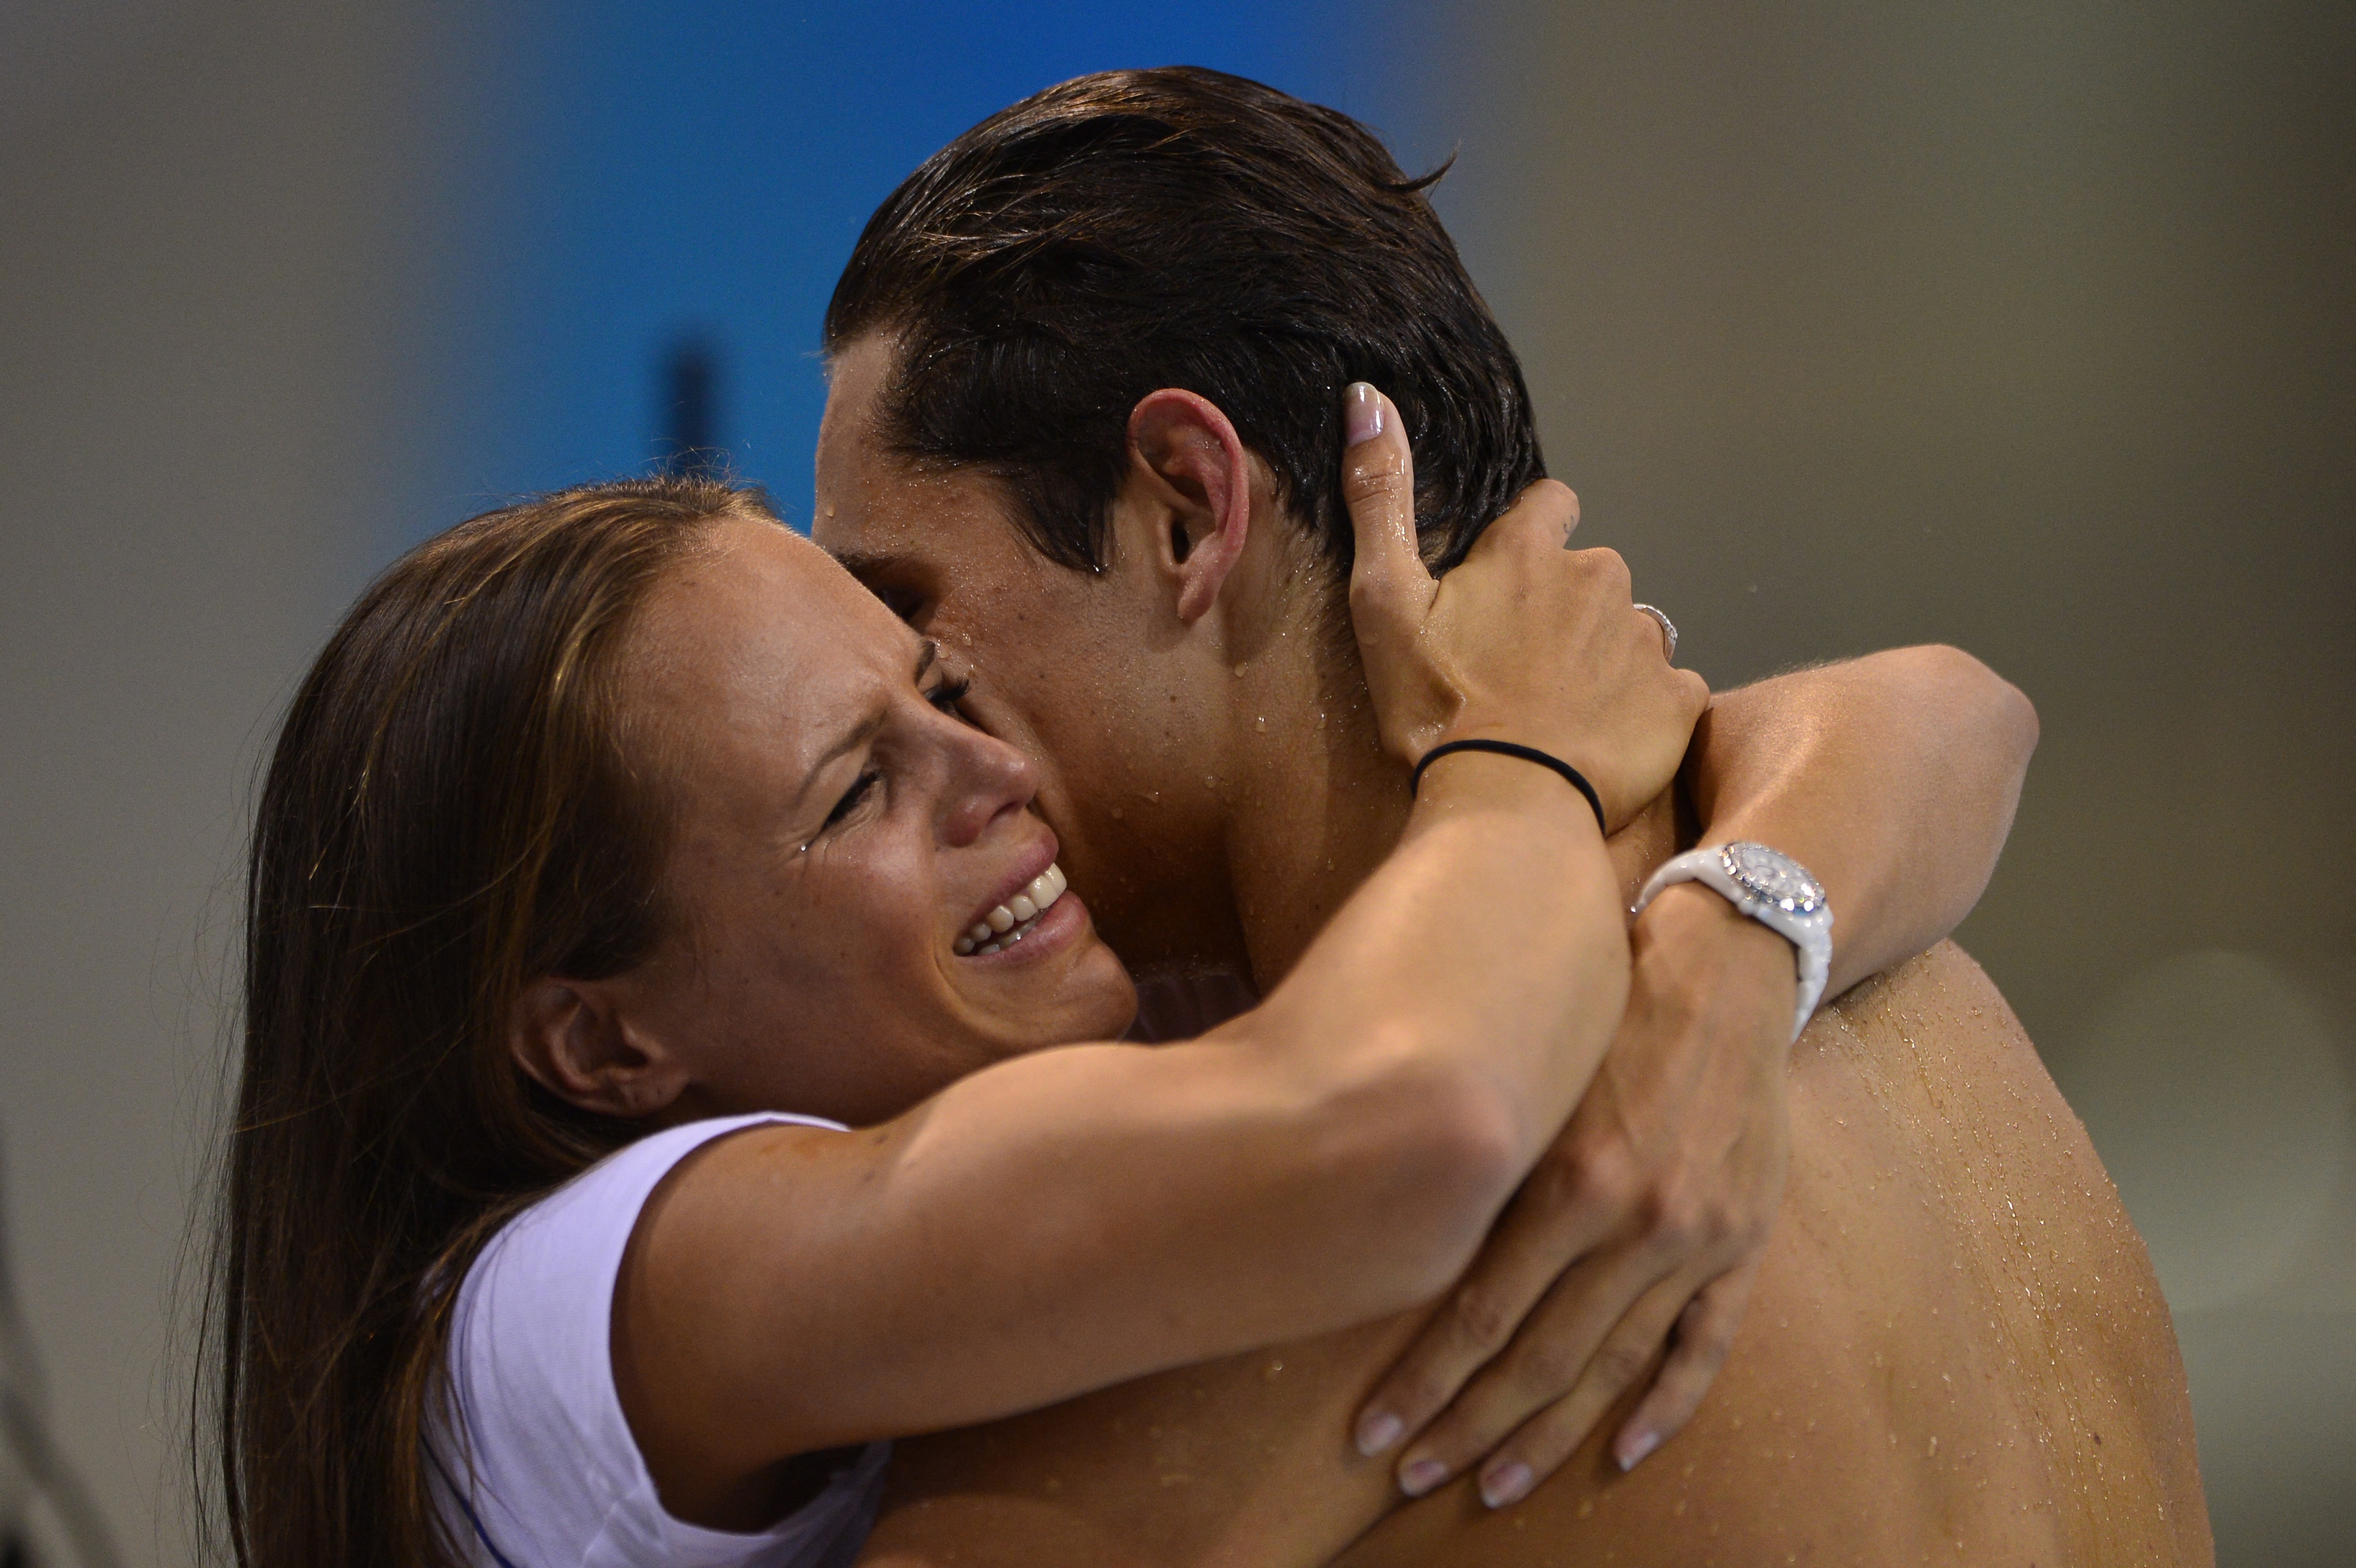 Pour son retour aux Jeux olympiques à Londres en 2012, Laure Manaudou avait été éliminée dès les séries, mais son frère, Florent, avait été sacré champion olympique sur 50 m nage libre. Fabrice Coffrini/AFP